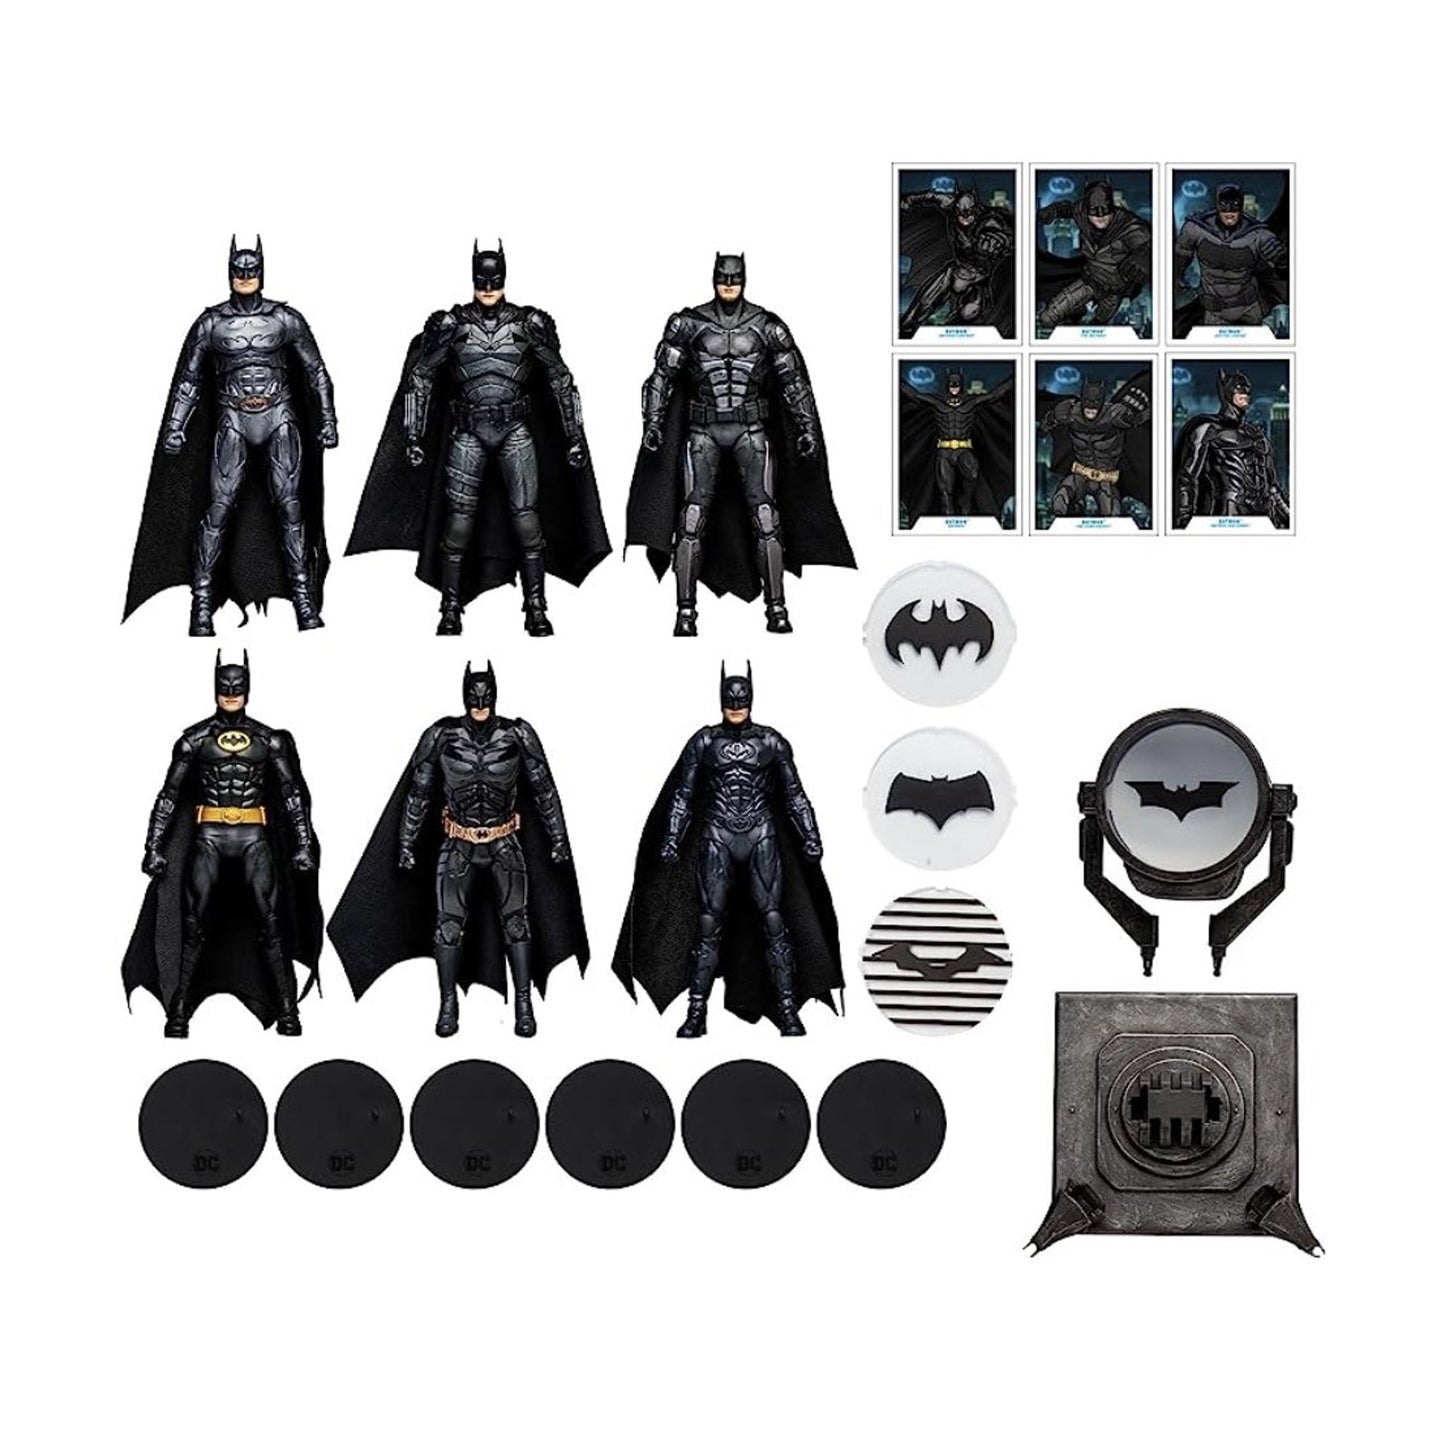 DC Multiverse Batman Movie Collection 6 Pack ABANDONADO (YA INCLUYE ENVIO)